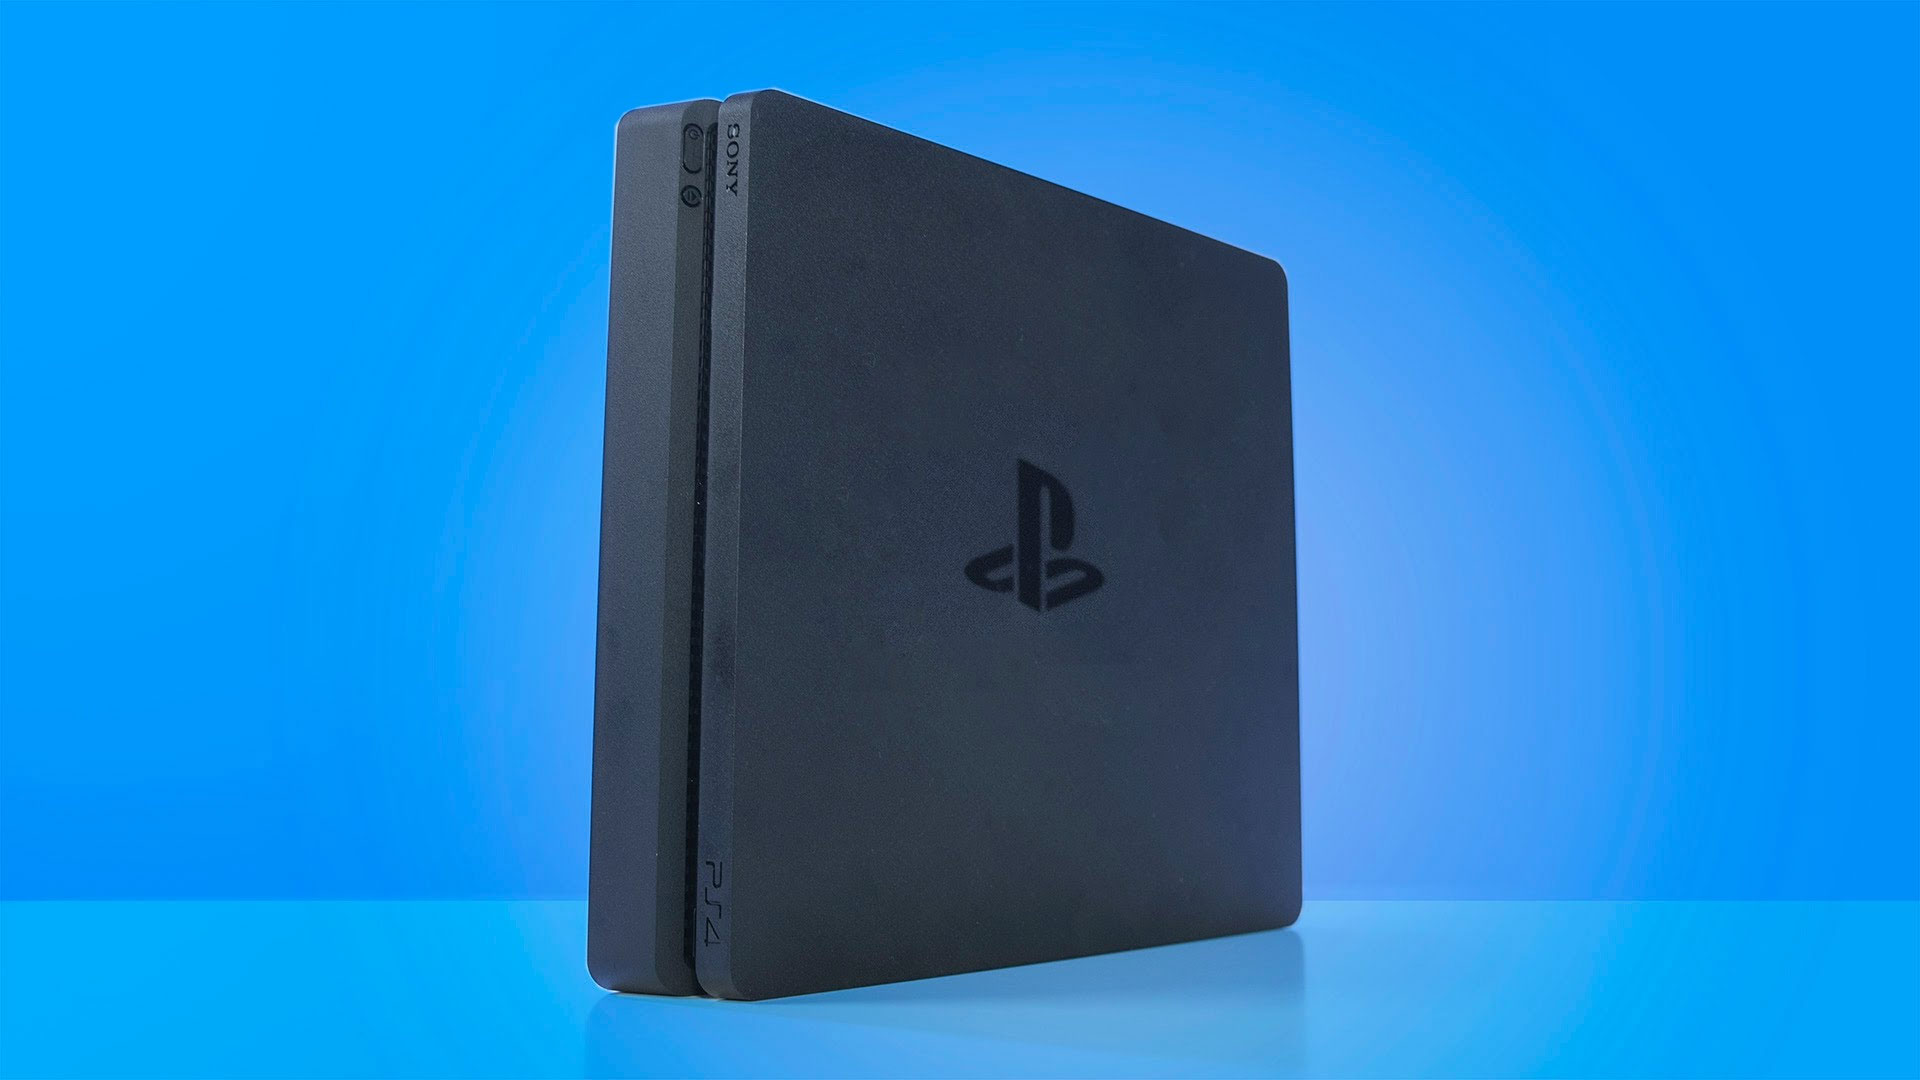 PlayStation 4 CUH-2200. Nowy model konsoli w sprzedaży